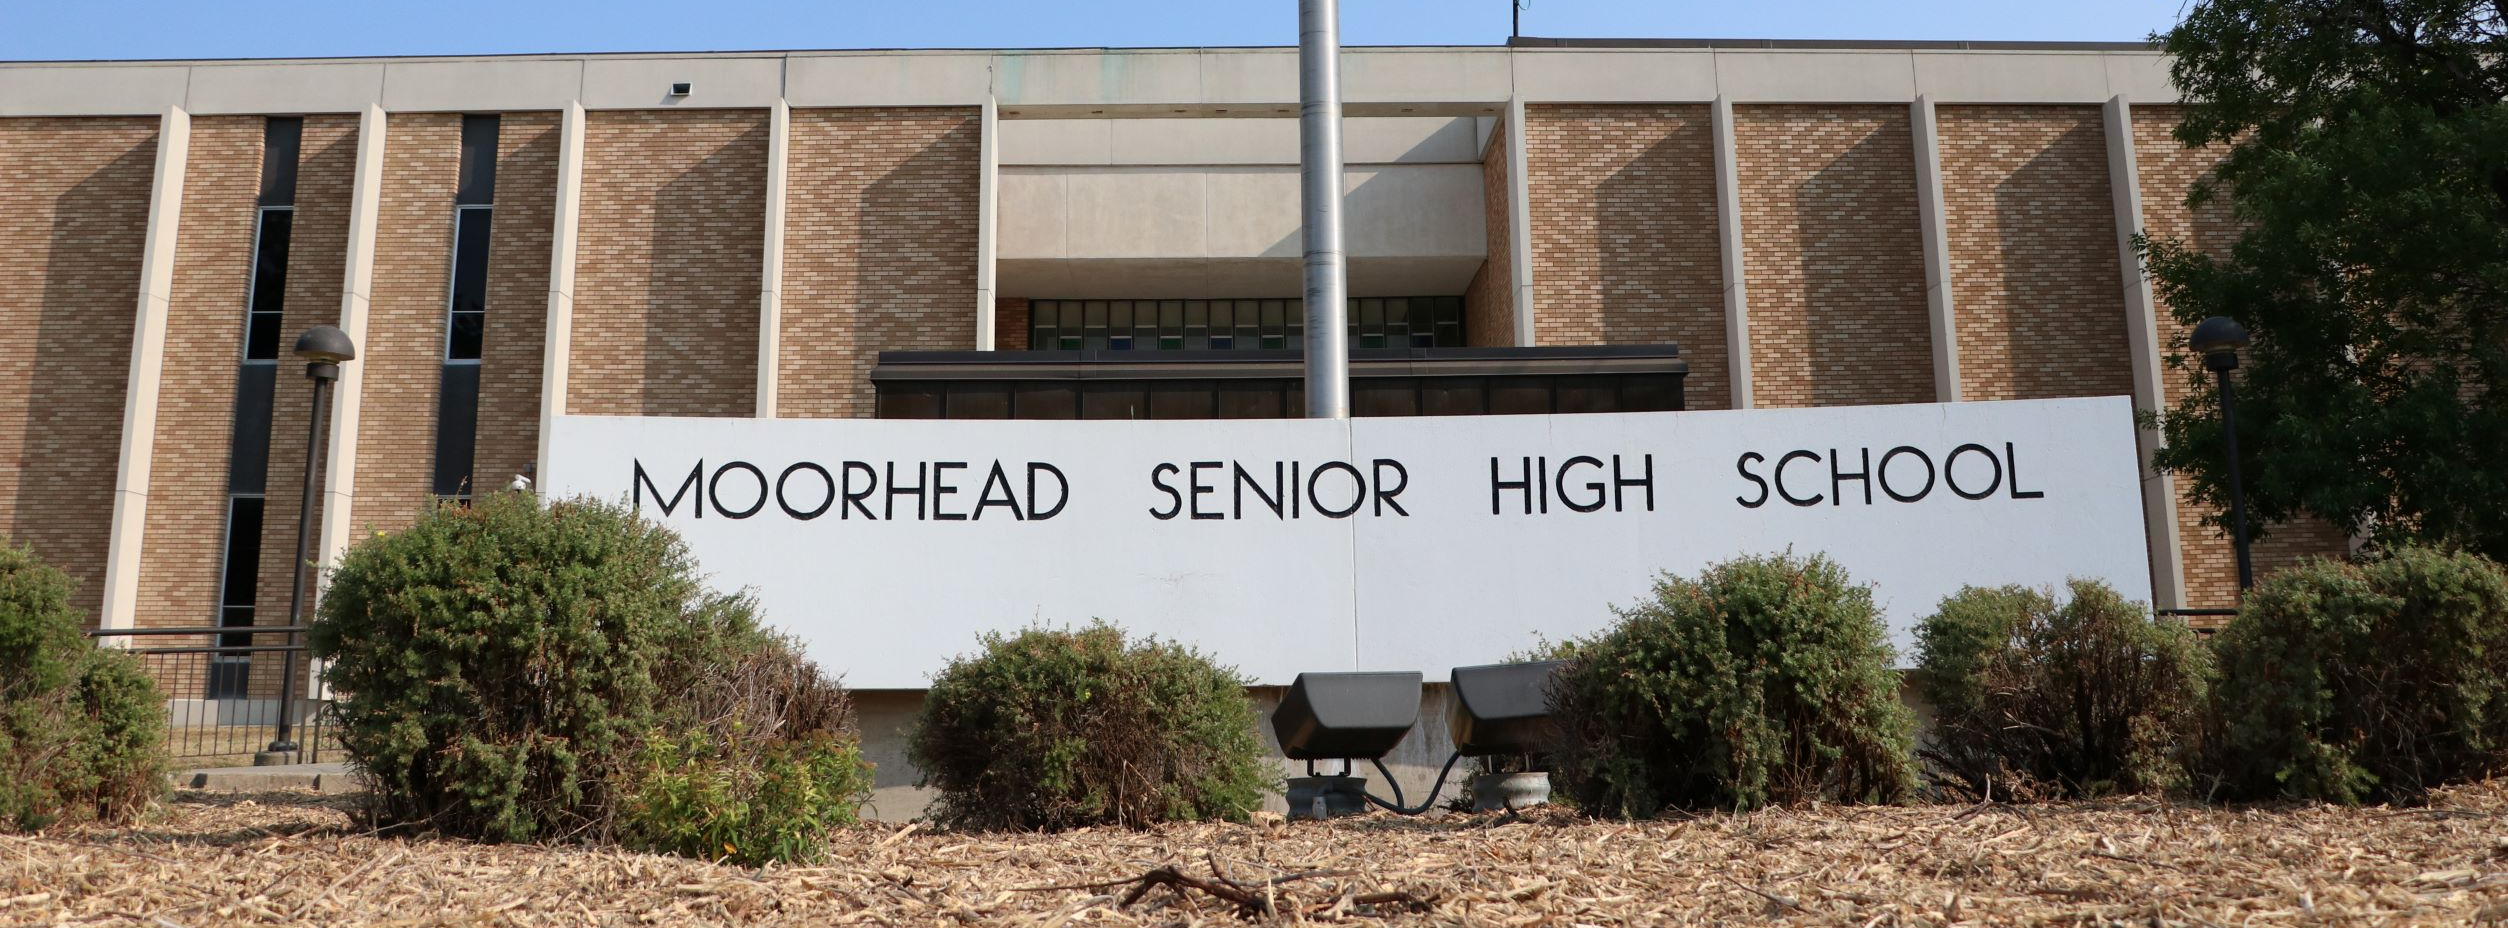 Moorhead High School 